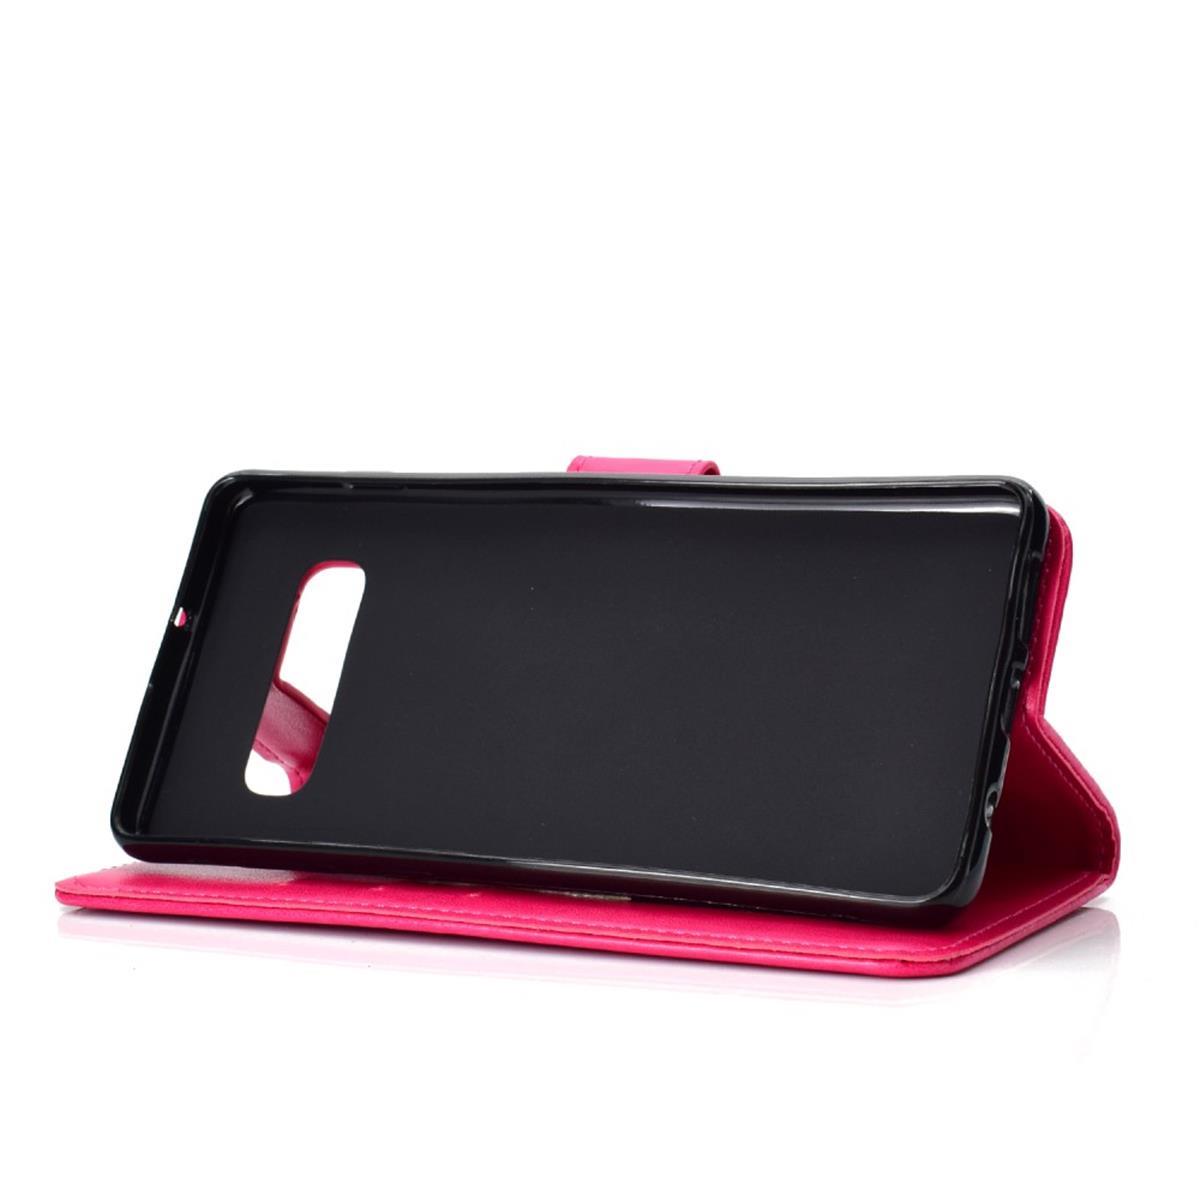 Hülle für Samsung Galaxy S10 Handyhülle Flip Case Cover Handytasche Mandala Pink